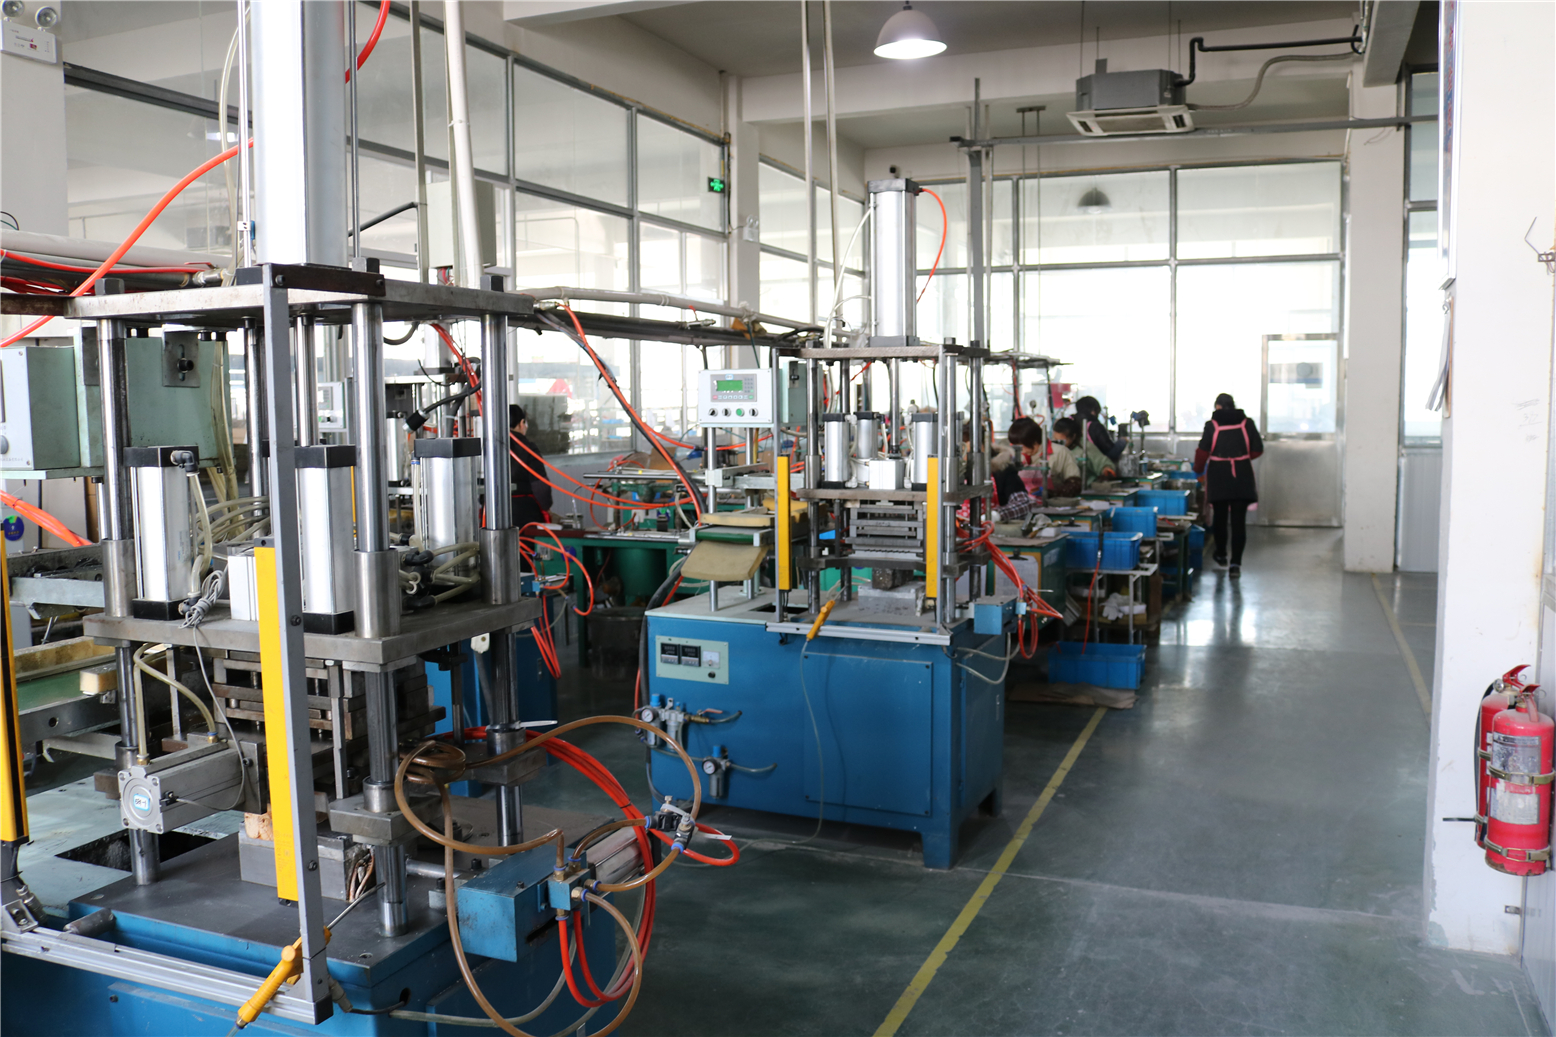 湖南首条陶瓷等静压自动化生产线在醴陵启用